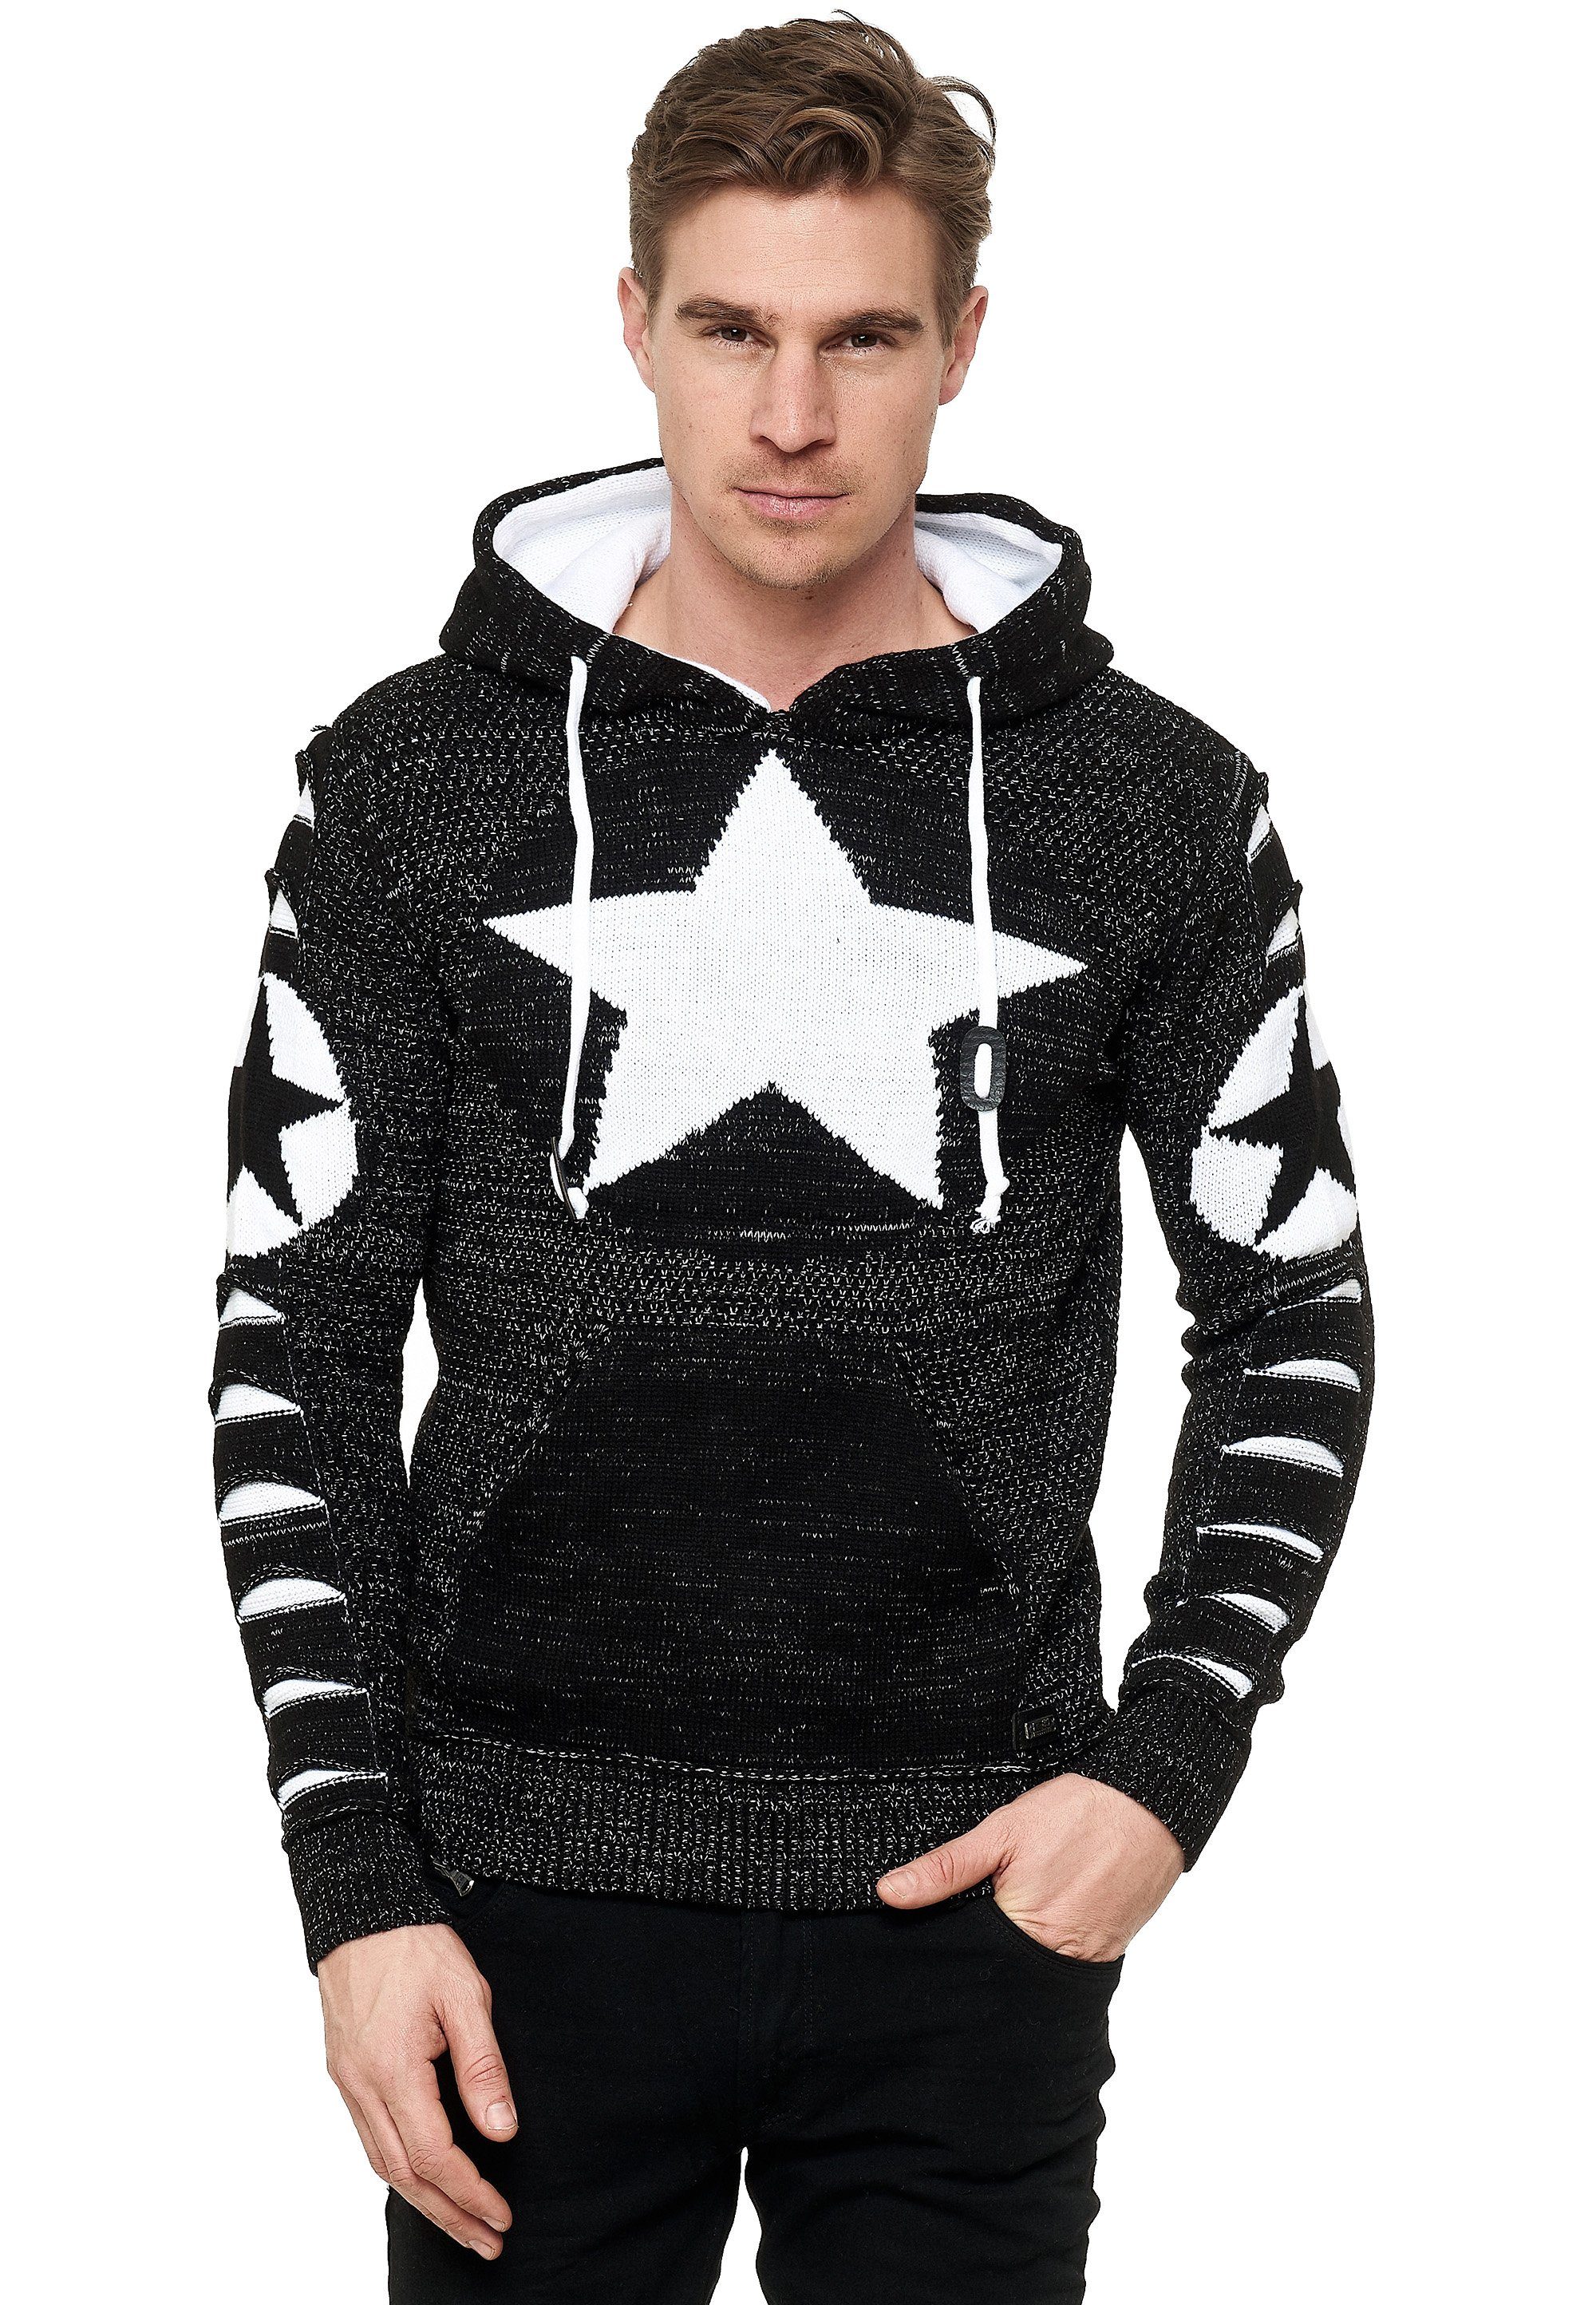 Rusty Neal Kapuzensweatshirt mit großem Stern-Design schwarz-weiß | Sweatshirts